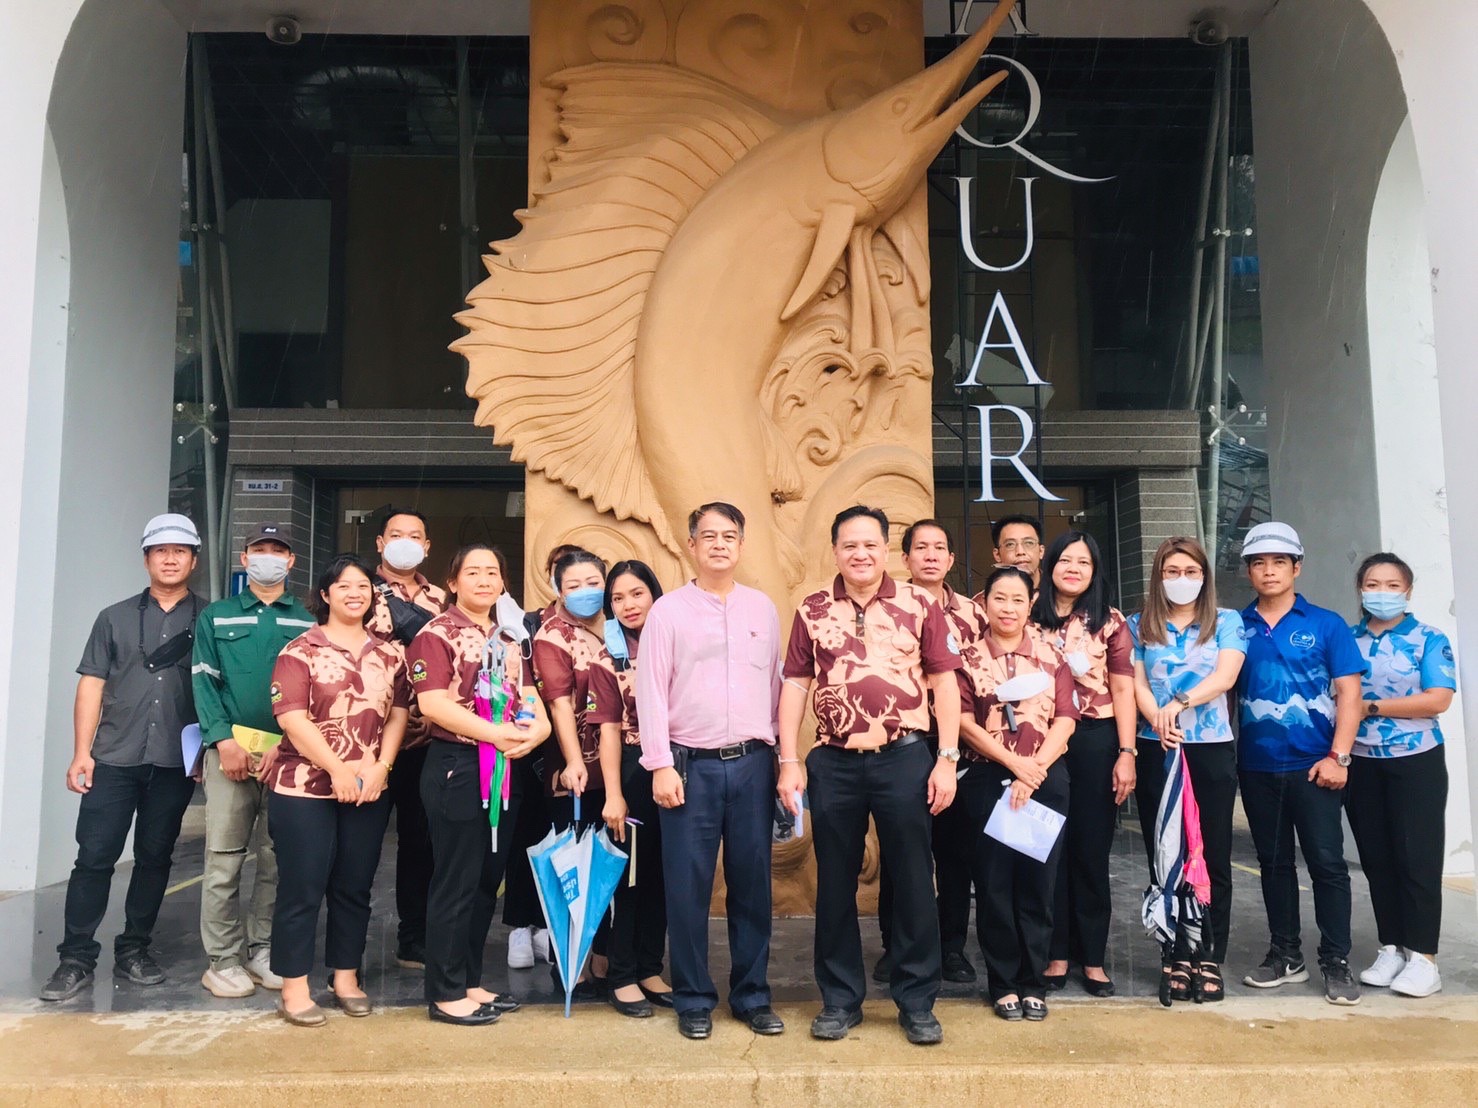 รองผู้อำนวยการองค์การสวนสัตว์ แห่งประเทศไทย ลงพื้นที่ตรวจเยี่ยมสวนสัตว์เชียงใหม่